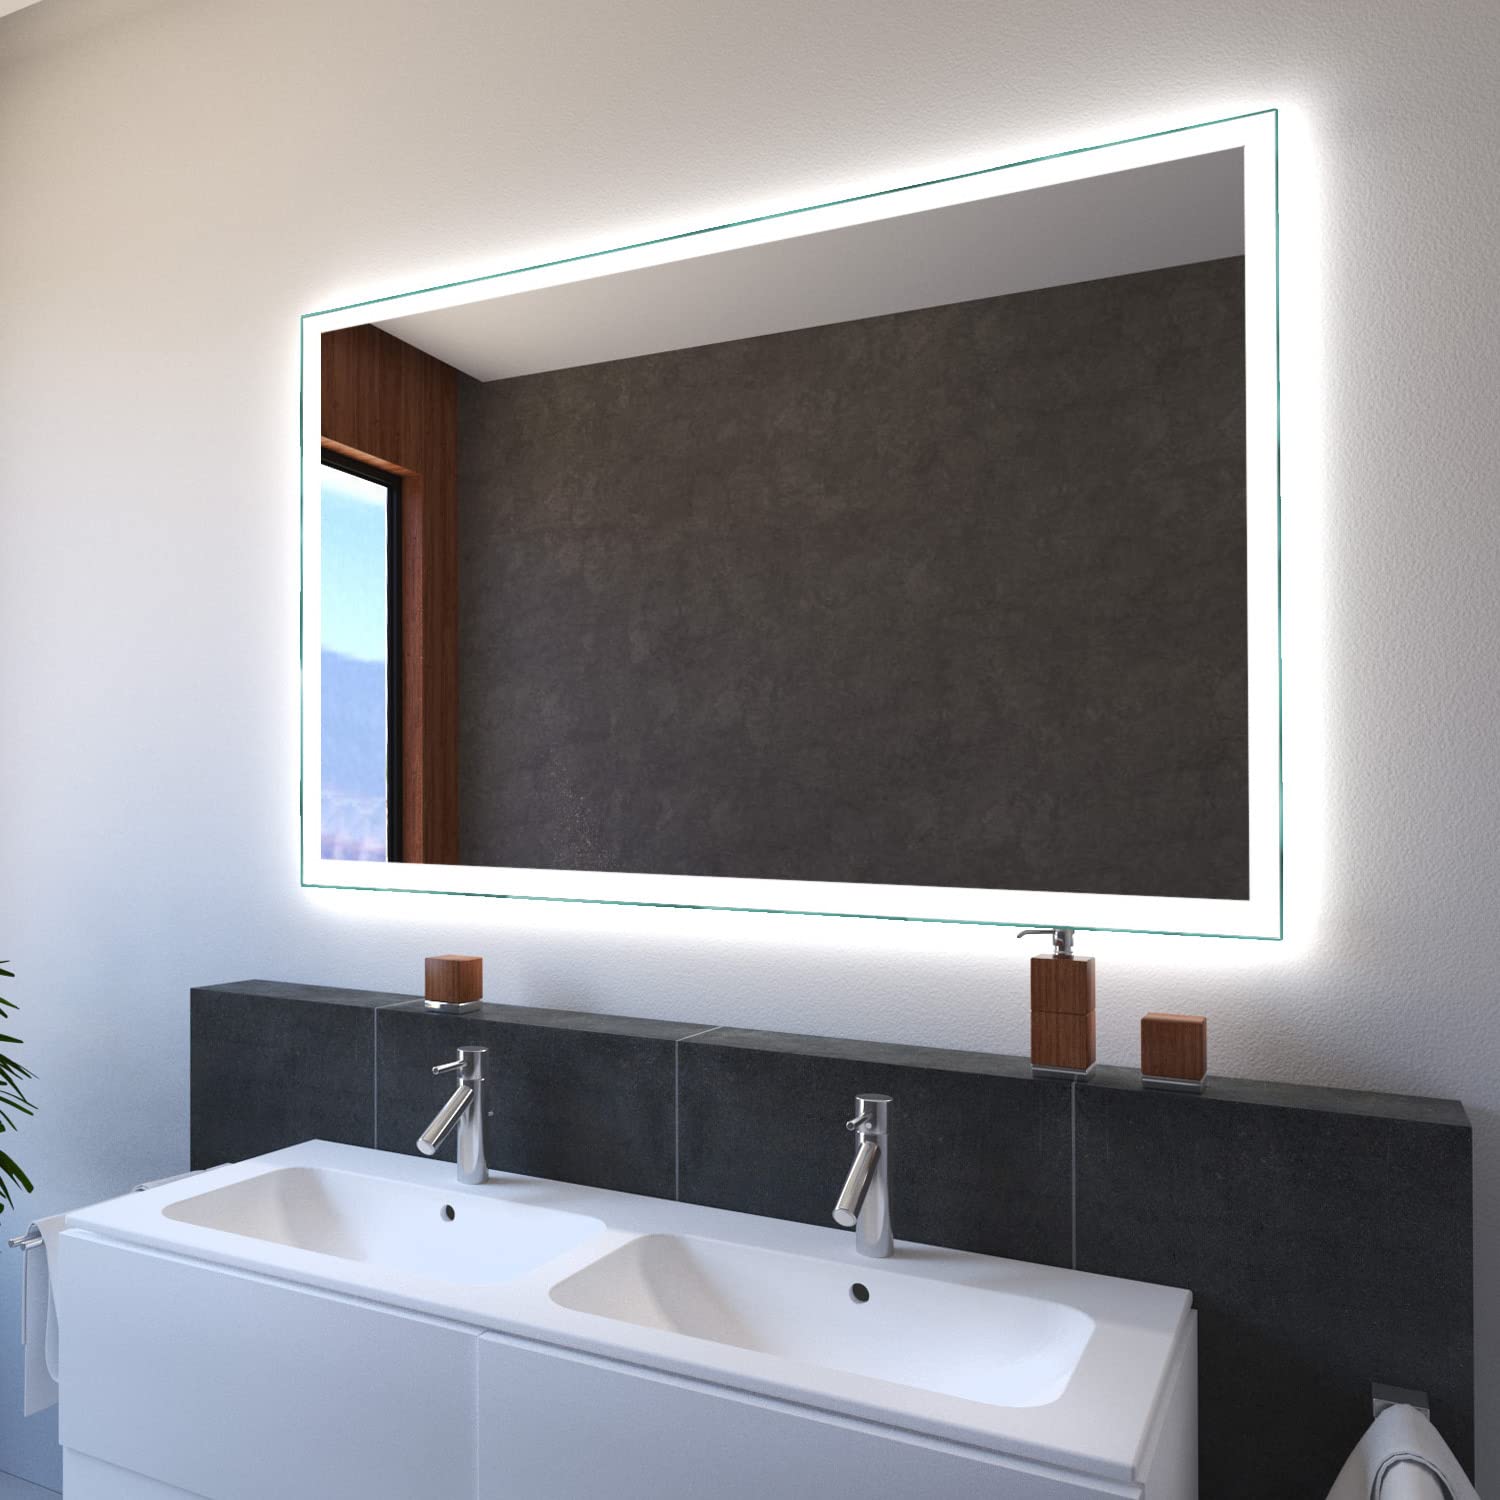 SARAR Wandspiegel mit LED-Beleuchtung 140x70cm Made in Germany Designo MA4110 Badspiegel Spiegel mit Beleuchtung Badezimmerspiegel nach-auf Maß